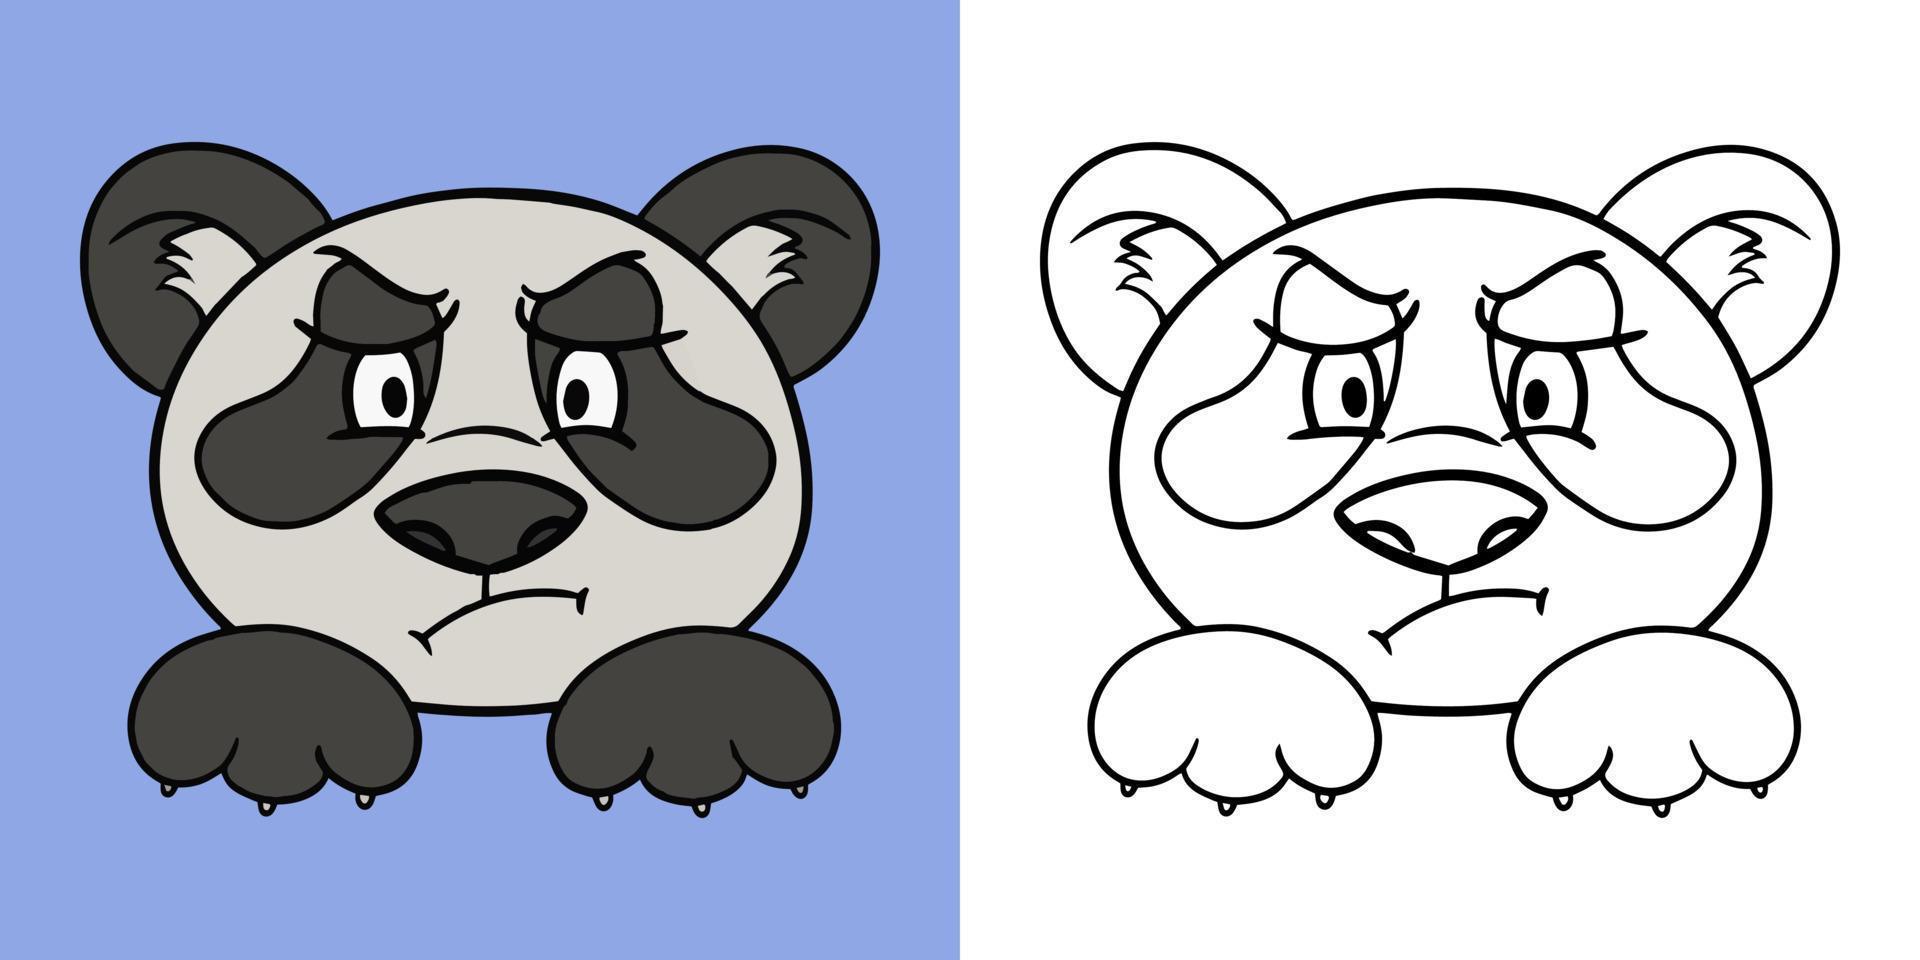 piccoli panda offesi, stile cartone animato, serie orizzontale di illustrazioni per libri da colorare, illustrazione vettoriale